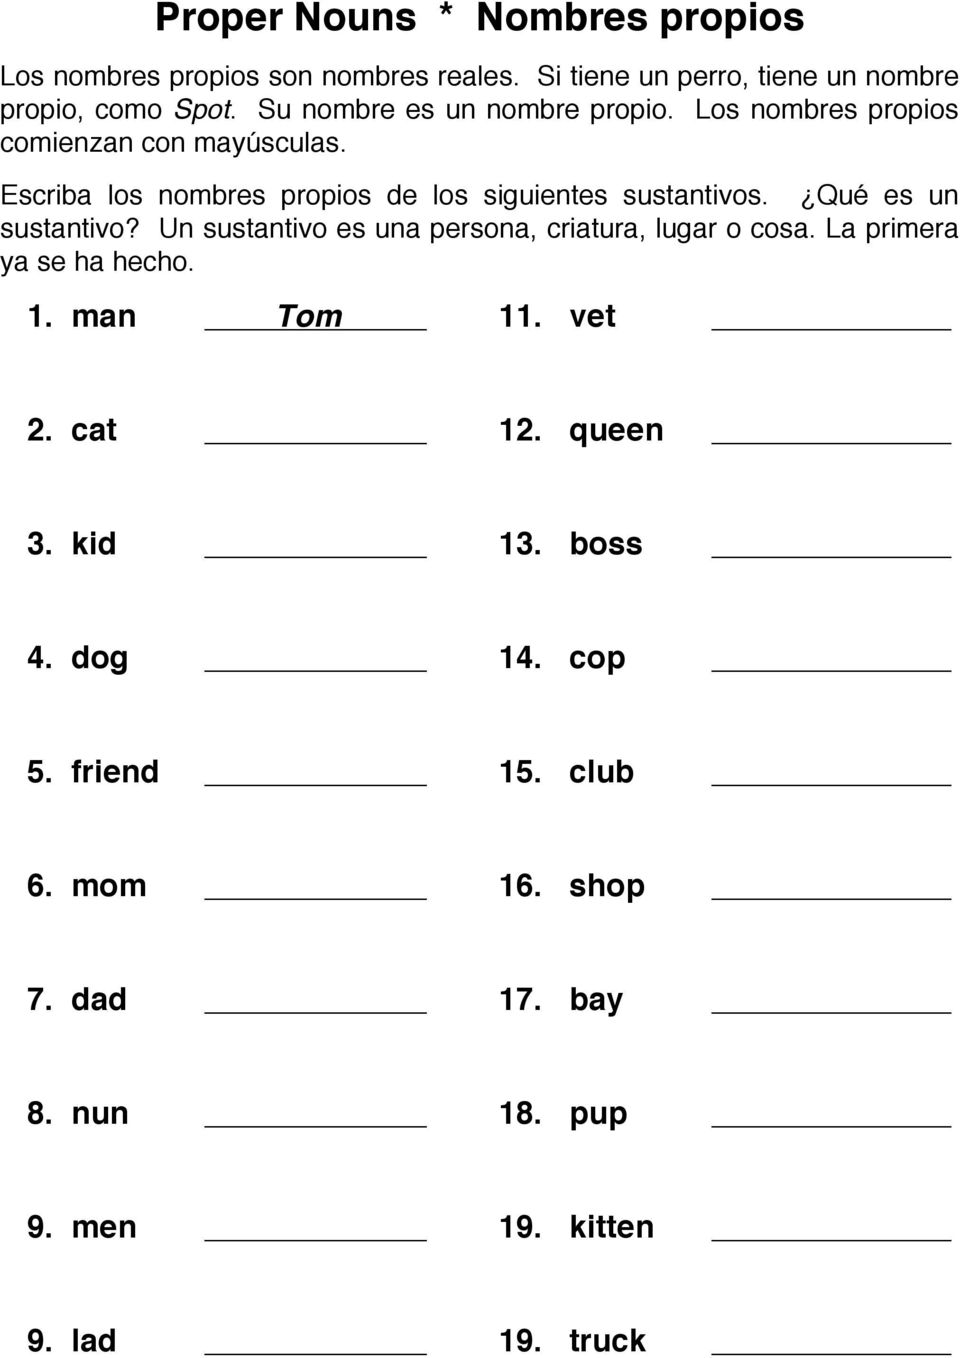 Escriba los nombres propios de los siguientes sustantivos. Qué es un sustantivo?